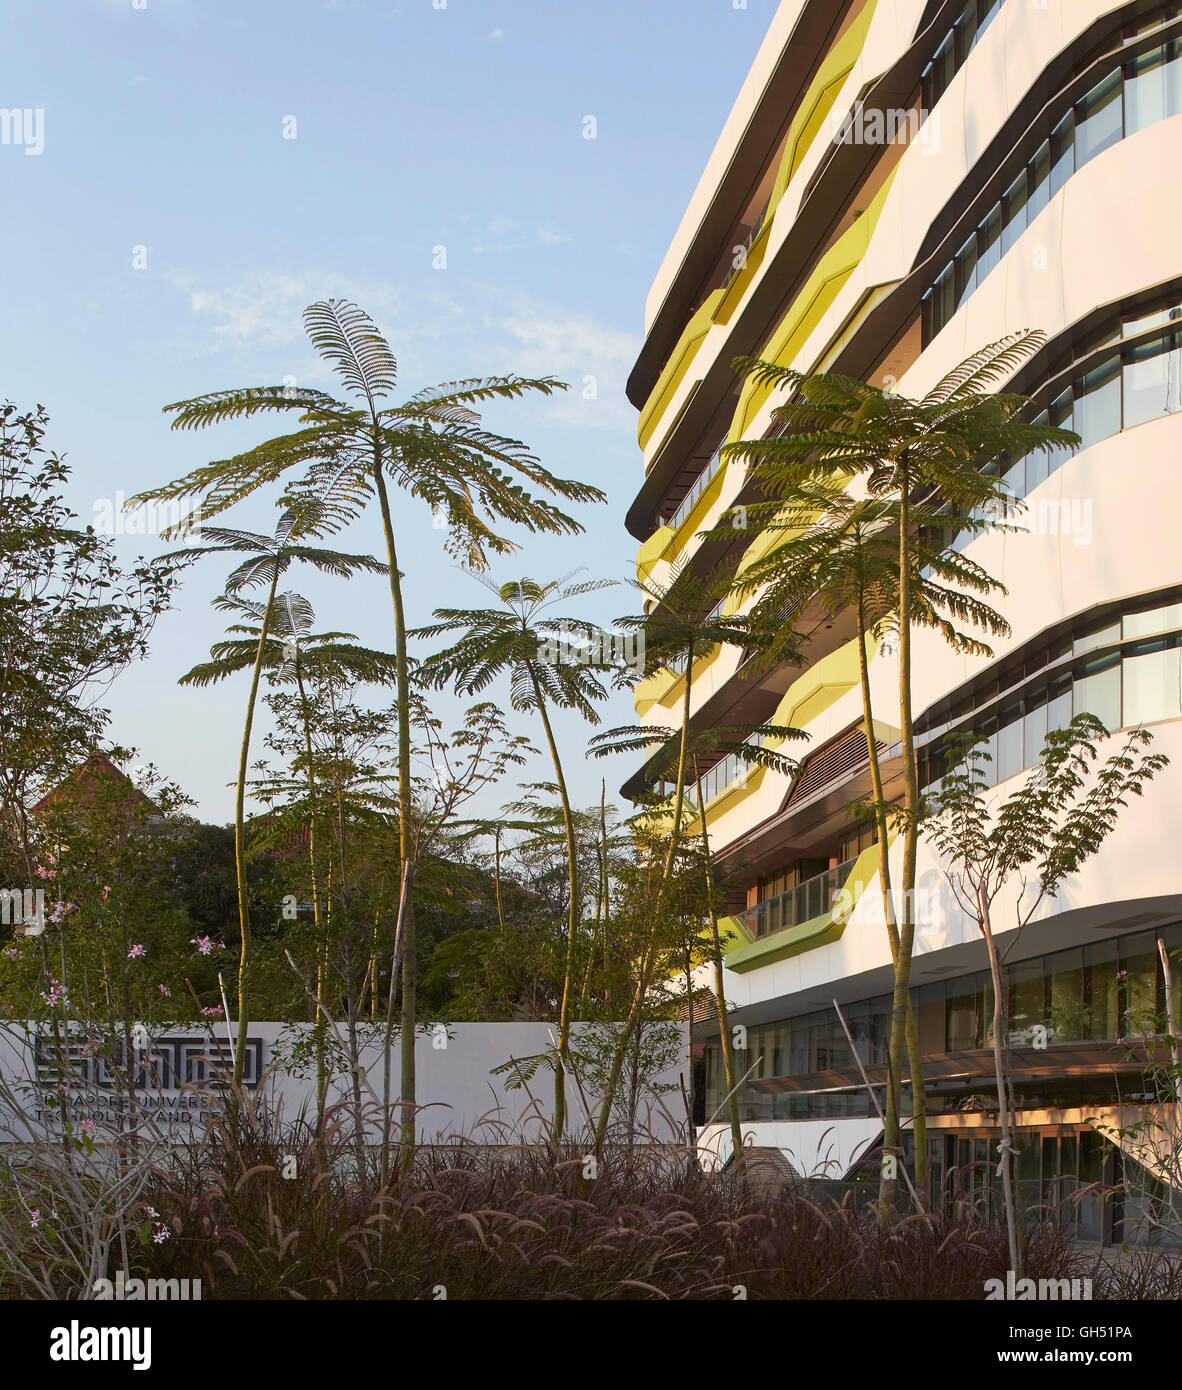 Tropische Pflanzen in Gegenüberstellung zur Außenfassade. Singapur-Hochschule für Technik und Design, Singapur, Singapur. Architekt: UNStudio, 2015. Stockfoto